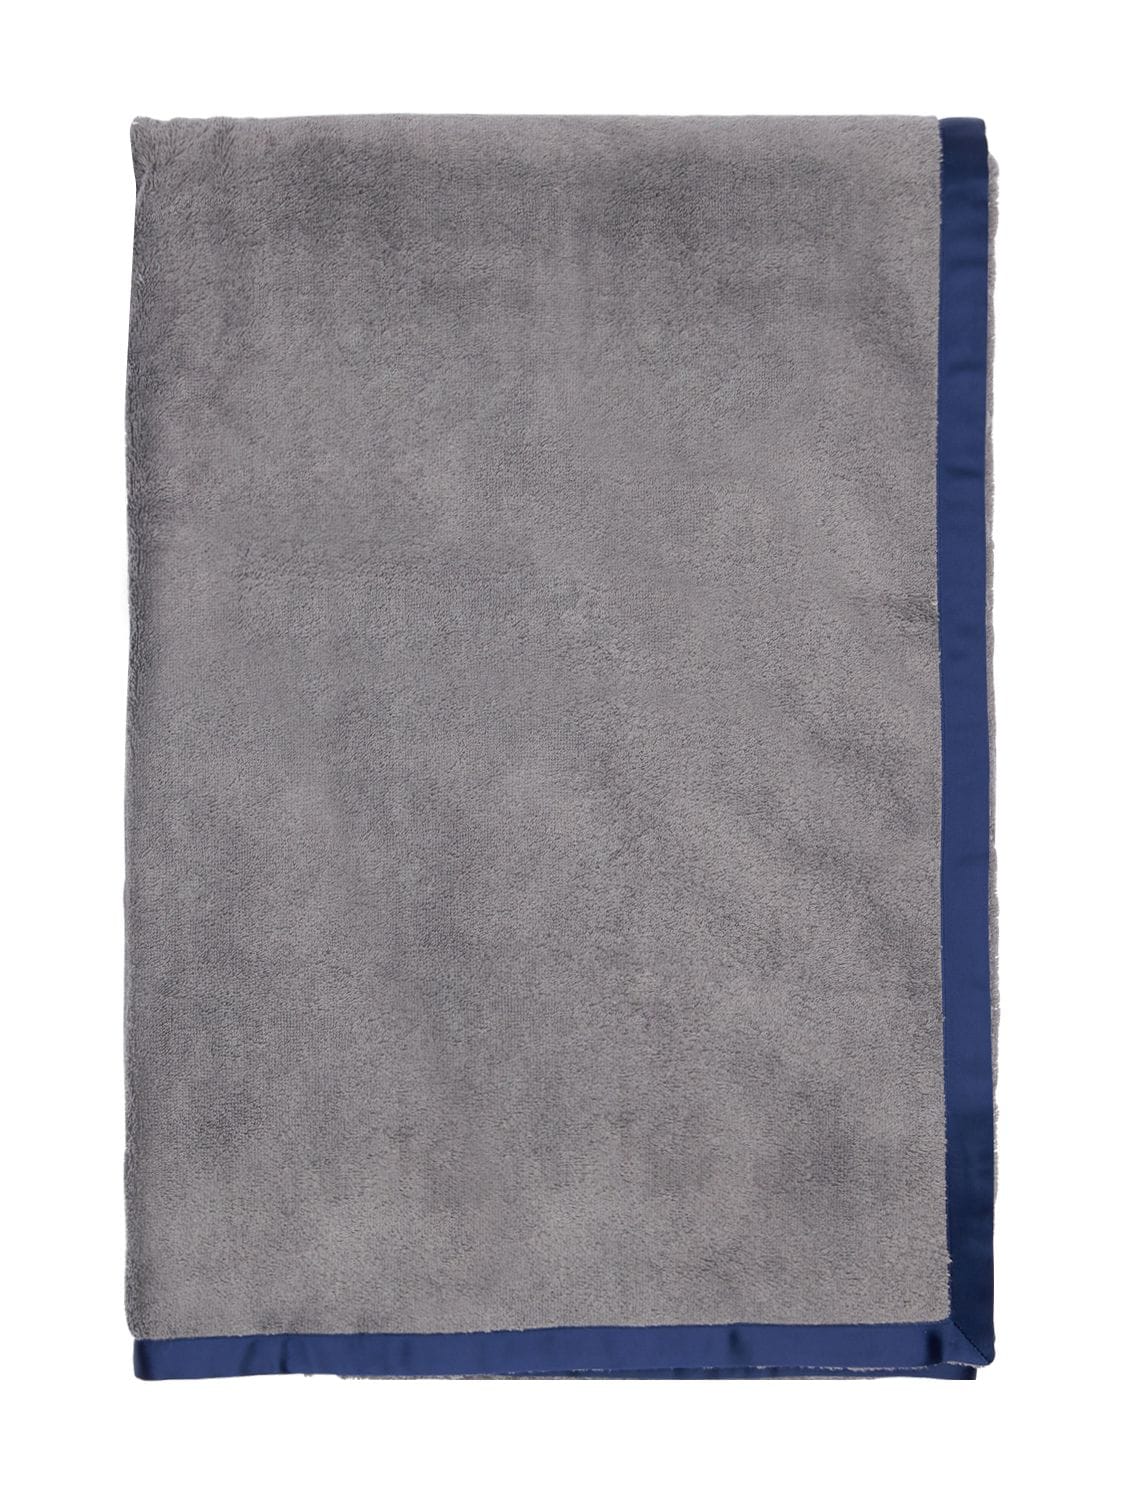 Alessandro Di Marco Cotton Terrycloth Bath Towel In Grey,blue